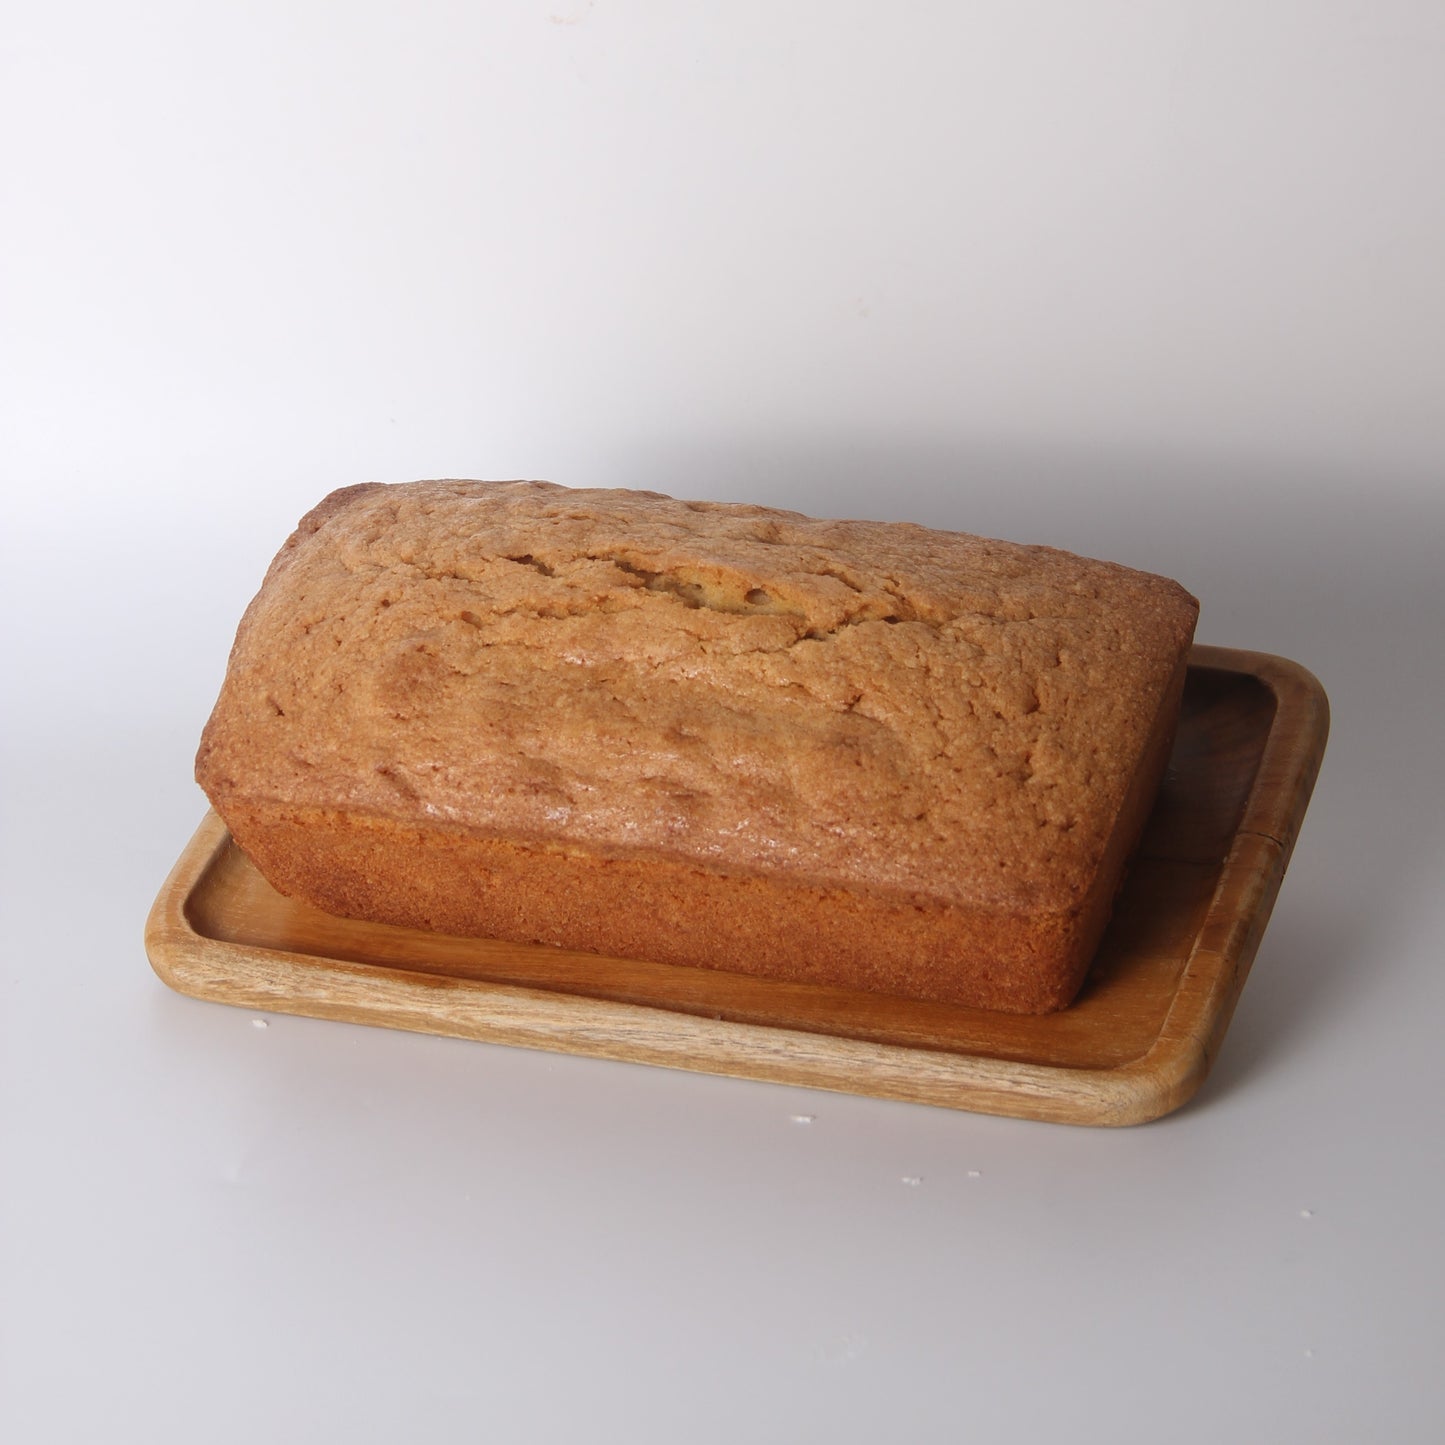 Brown Butter Loaf Cake